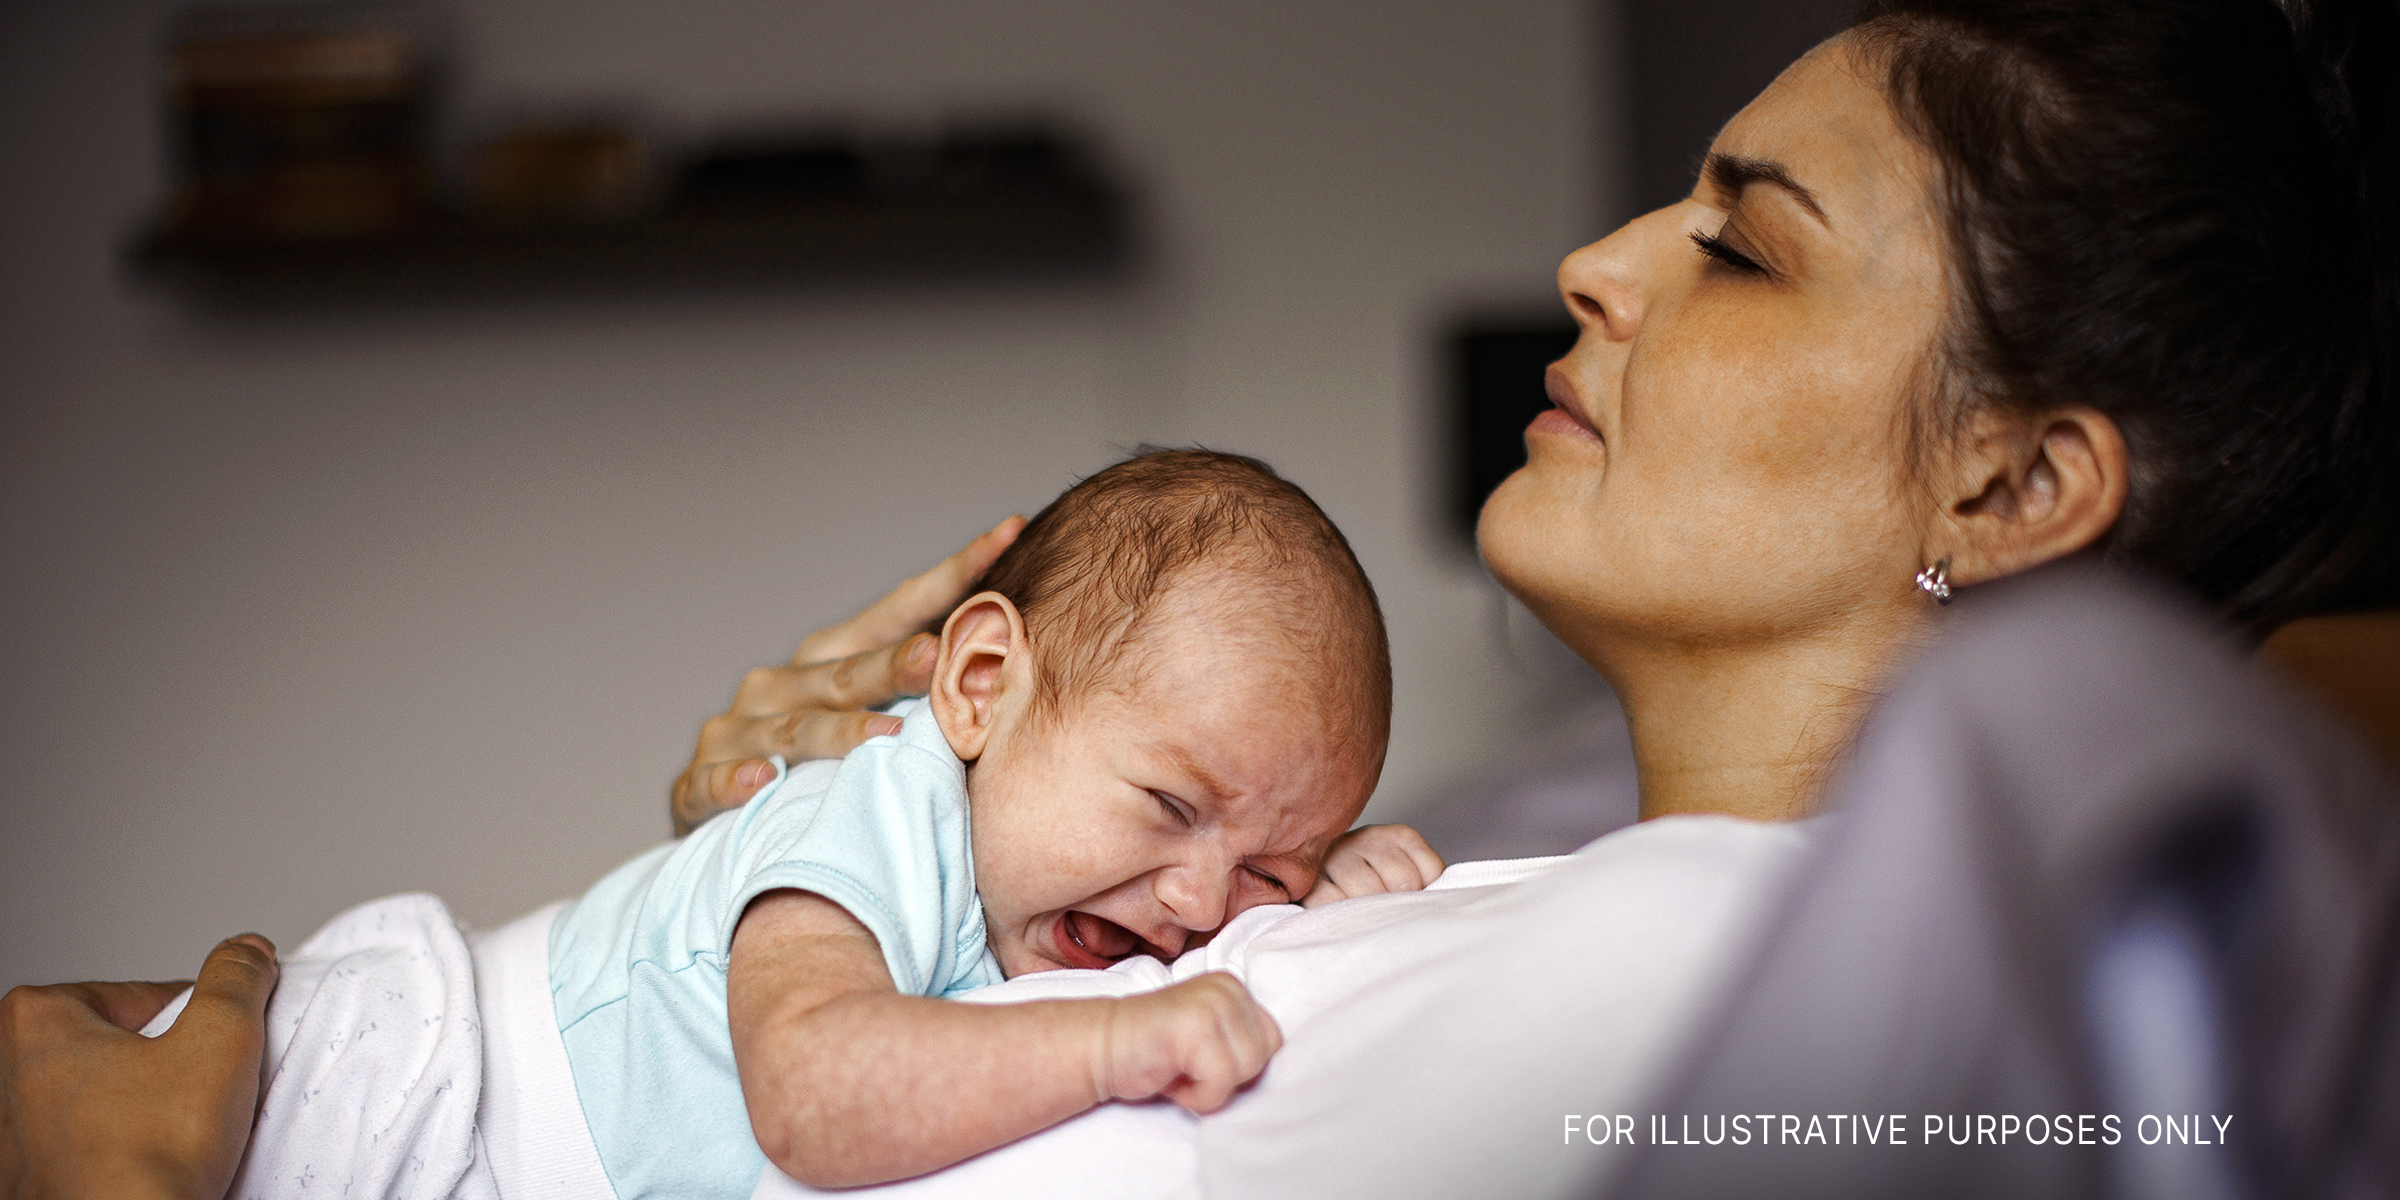 Eine verzweifelte Frau, die sich mit ihrem weinenden Baby auf die Brust legt | Quelle: Getty Images